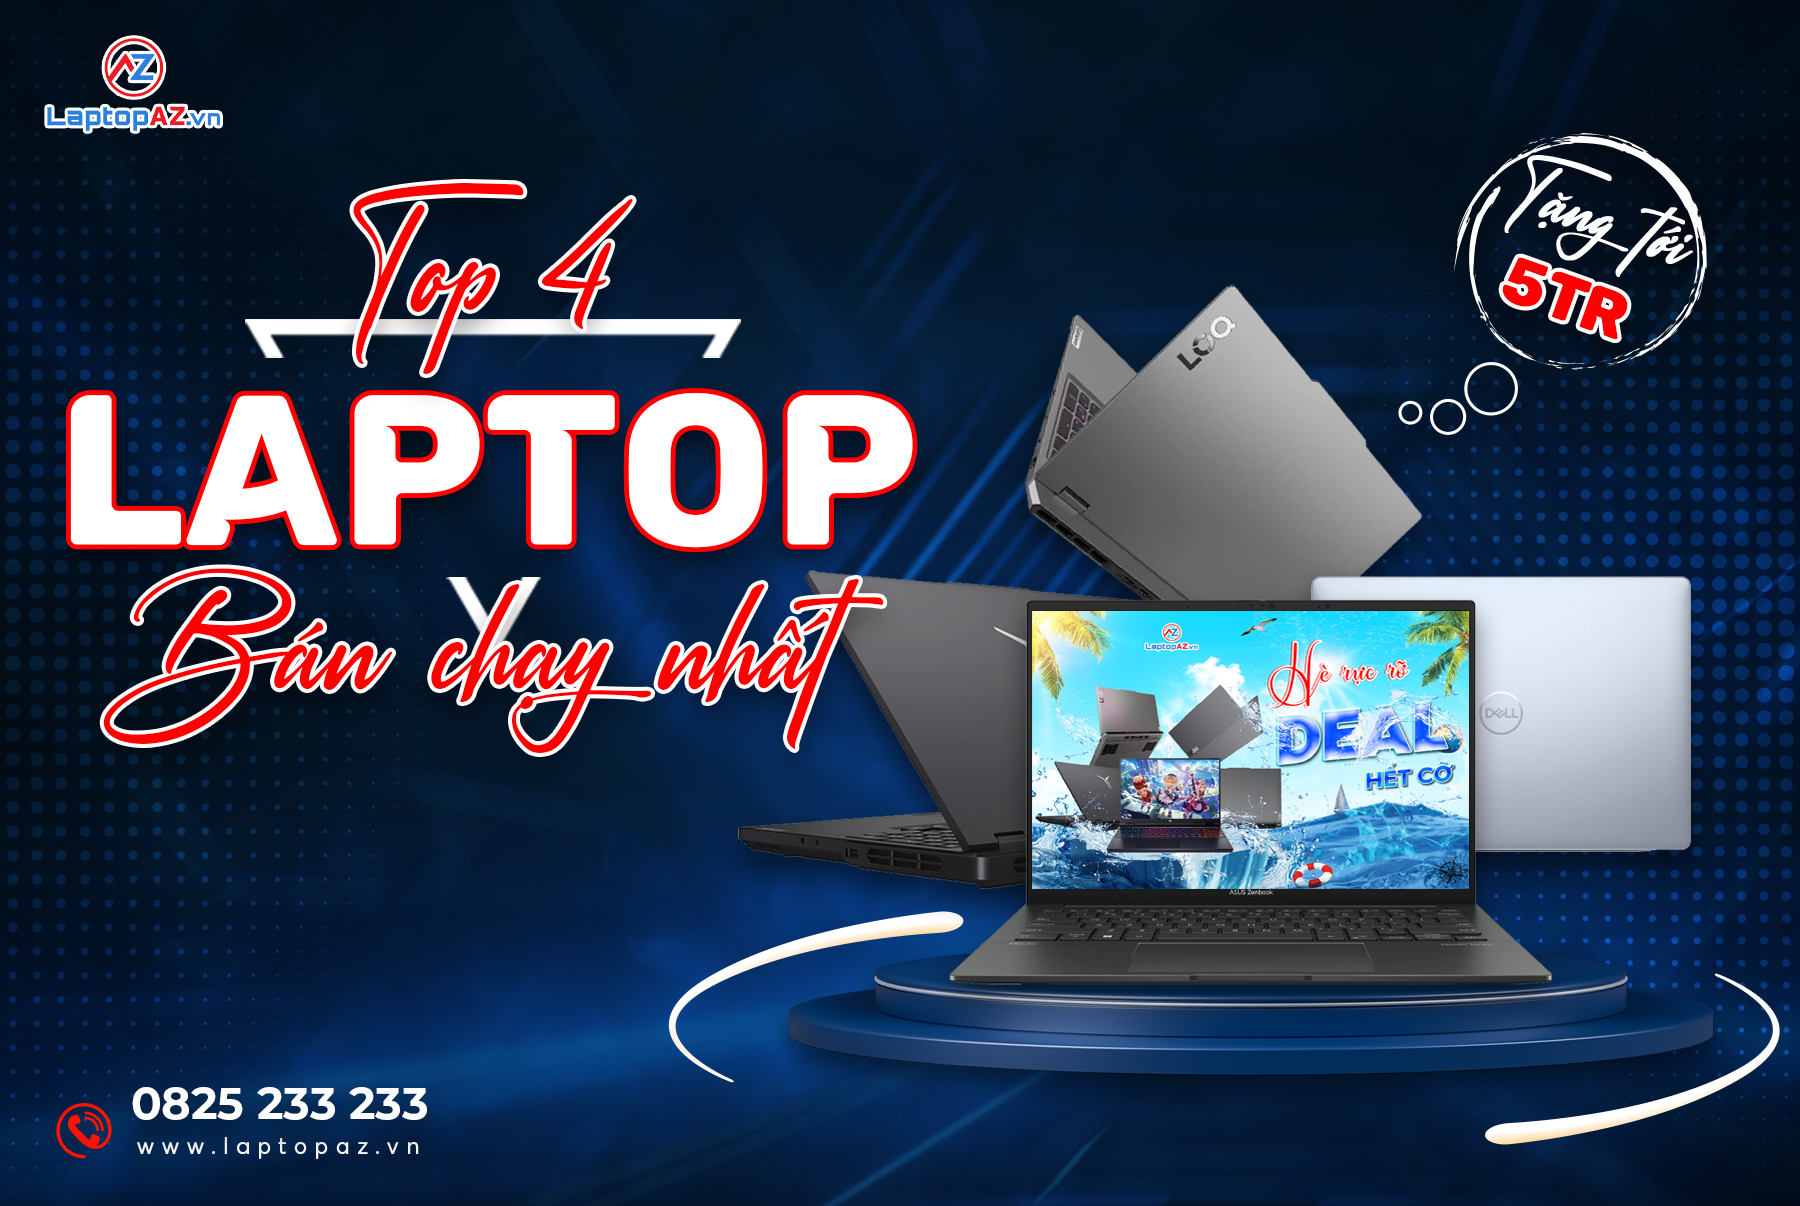 TOP 4 Laptop Bán Chạy Nhất Chương Trình Hè Rực Rỡ Deal Hết Cỡ